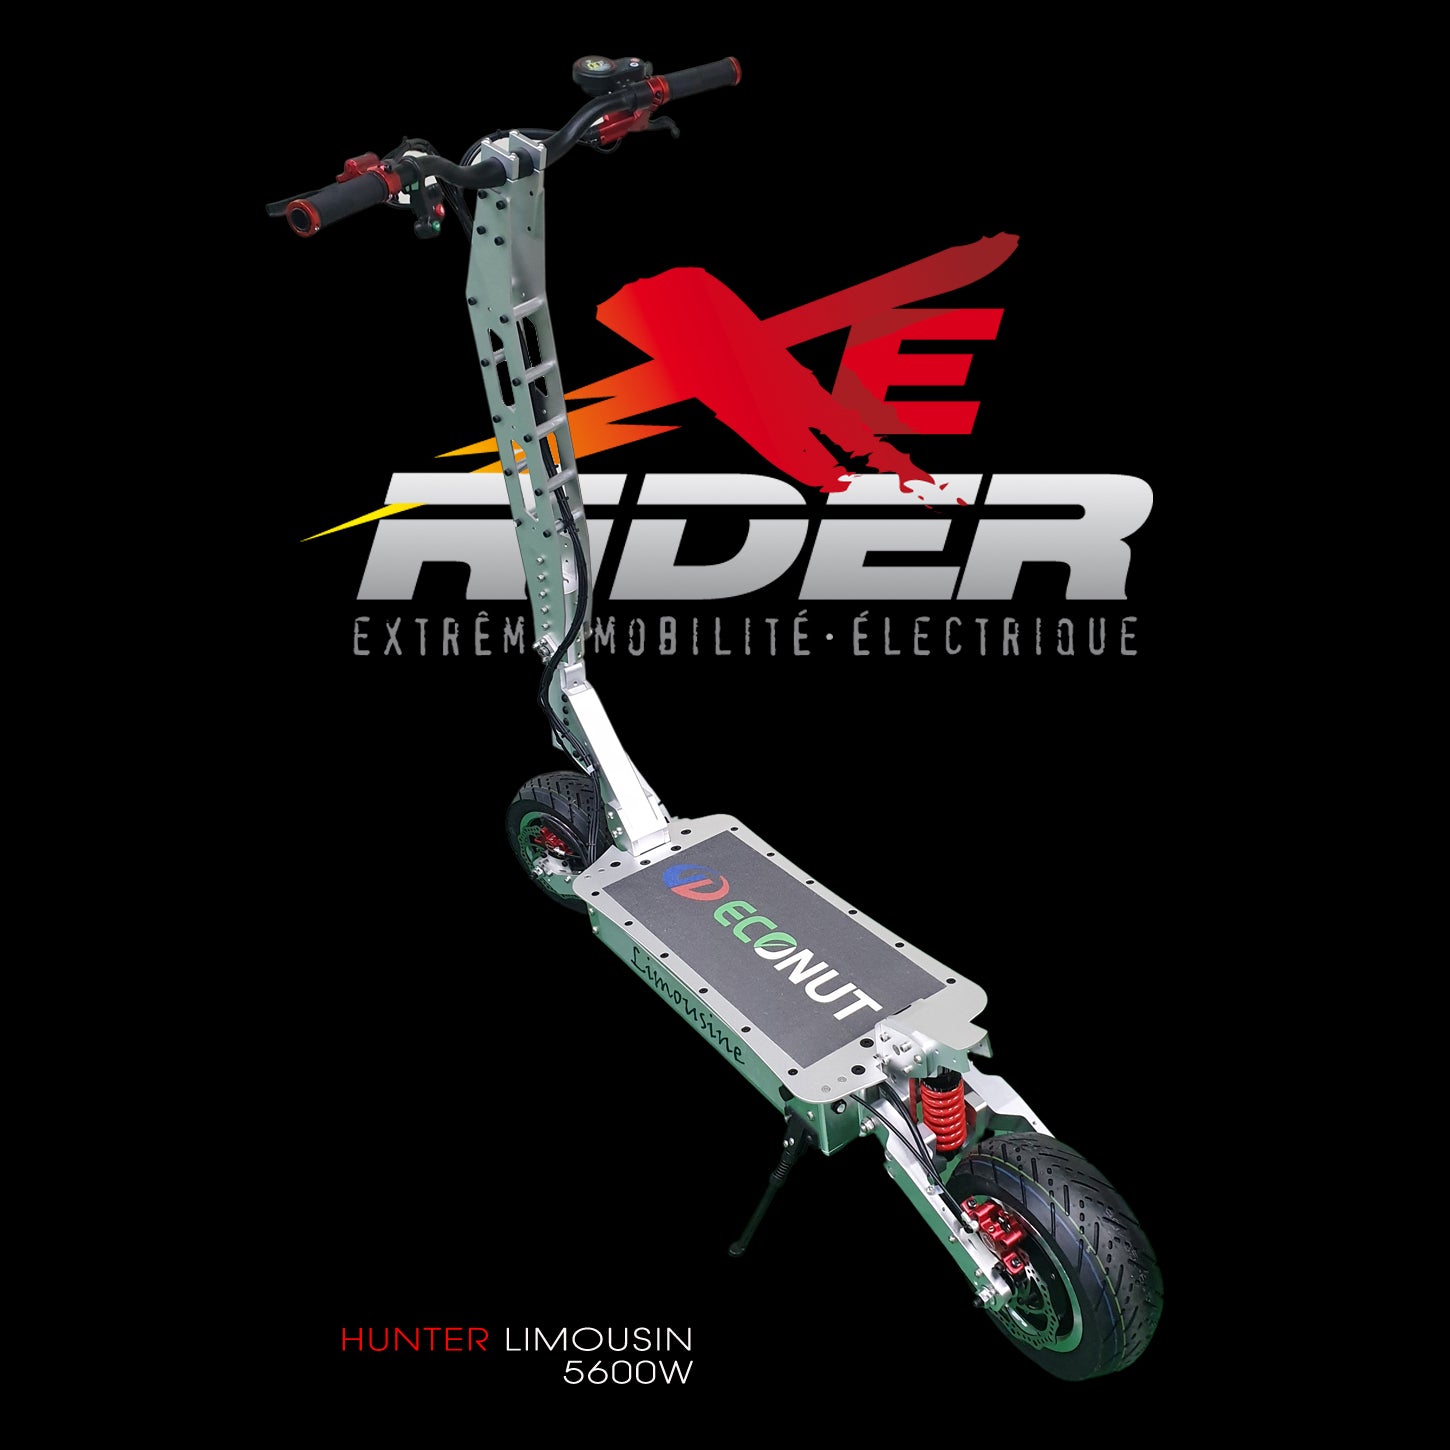 HUNTER LIMOUSINE Trottinette électrique exclusive – Xerider